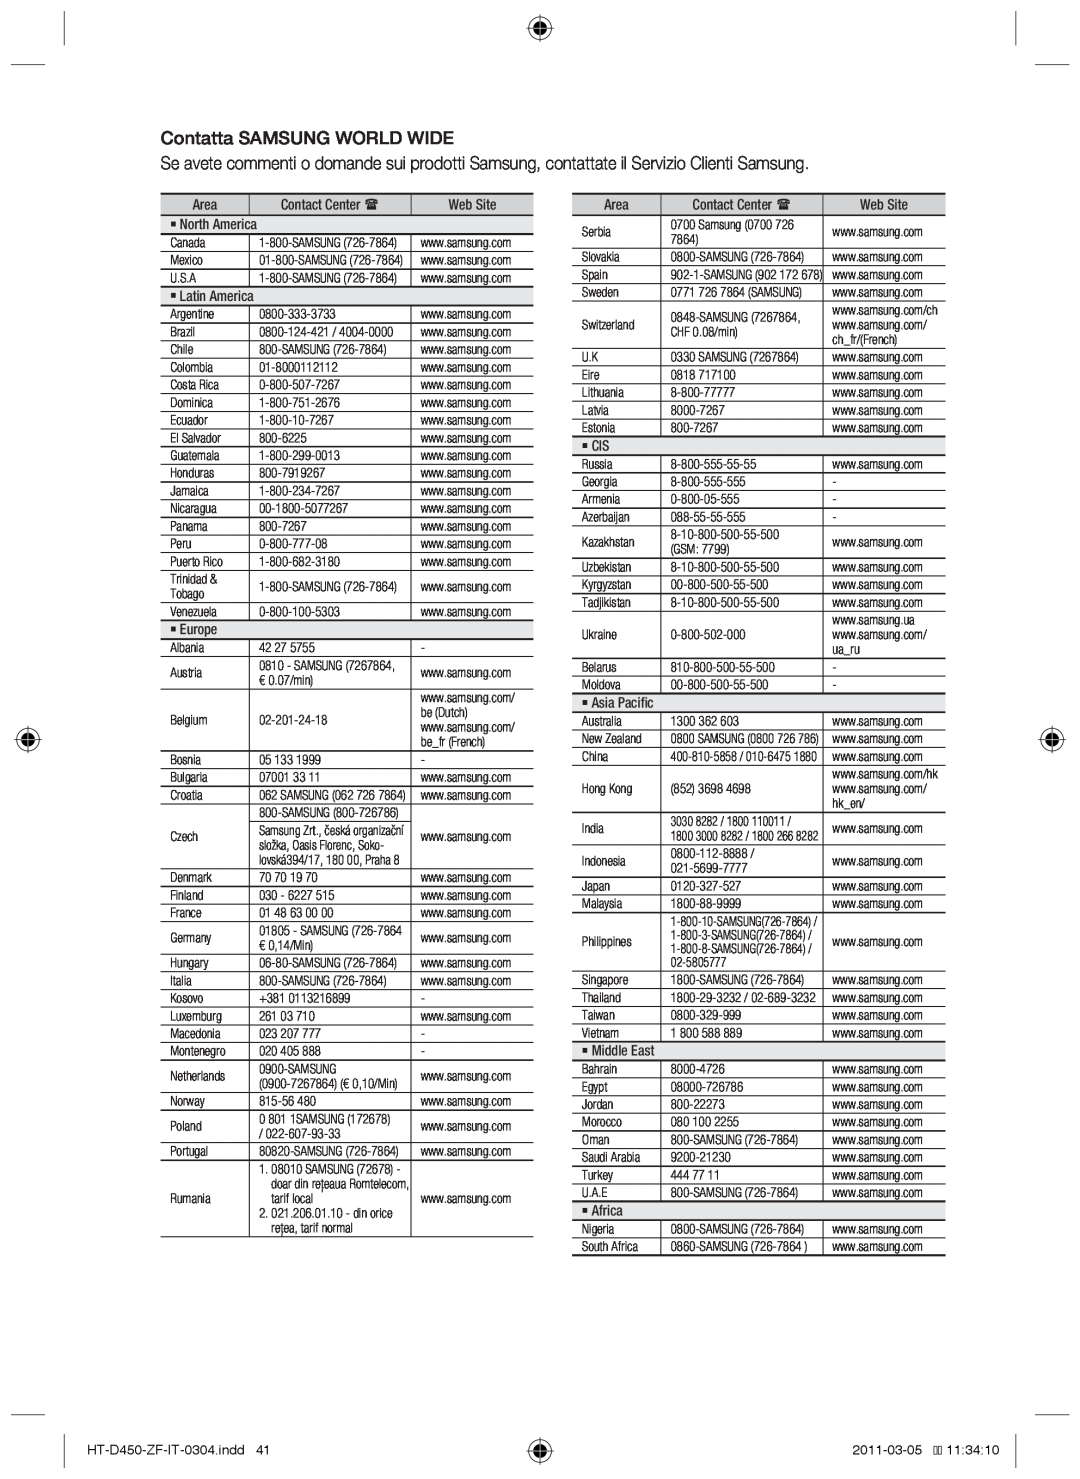 Samsung HT-D453, HT-D455 user manual Contatta SAMSUNG WORLD WIDE, HT-D450-ZF-IT-0304.indd41, 2011-03-0511:34:10 